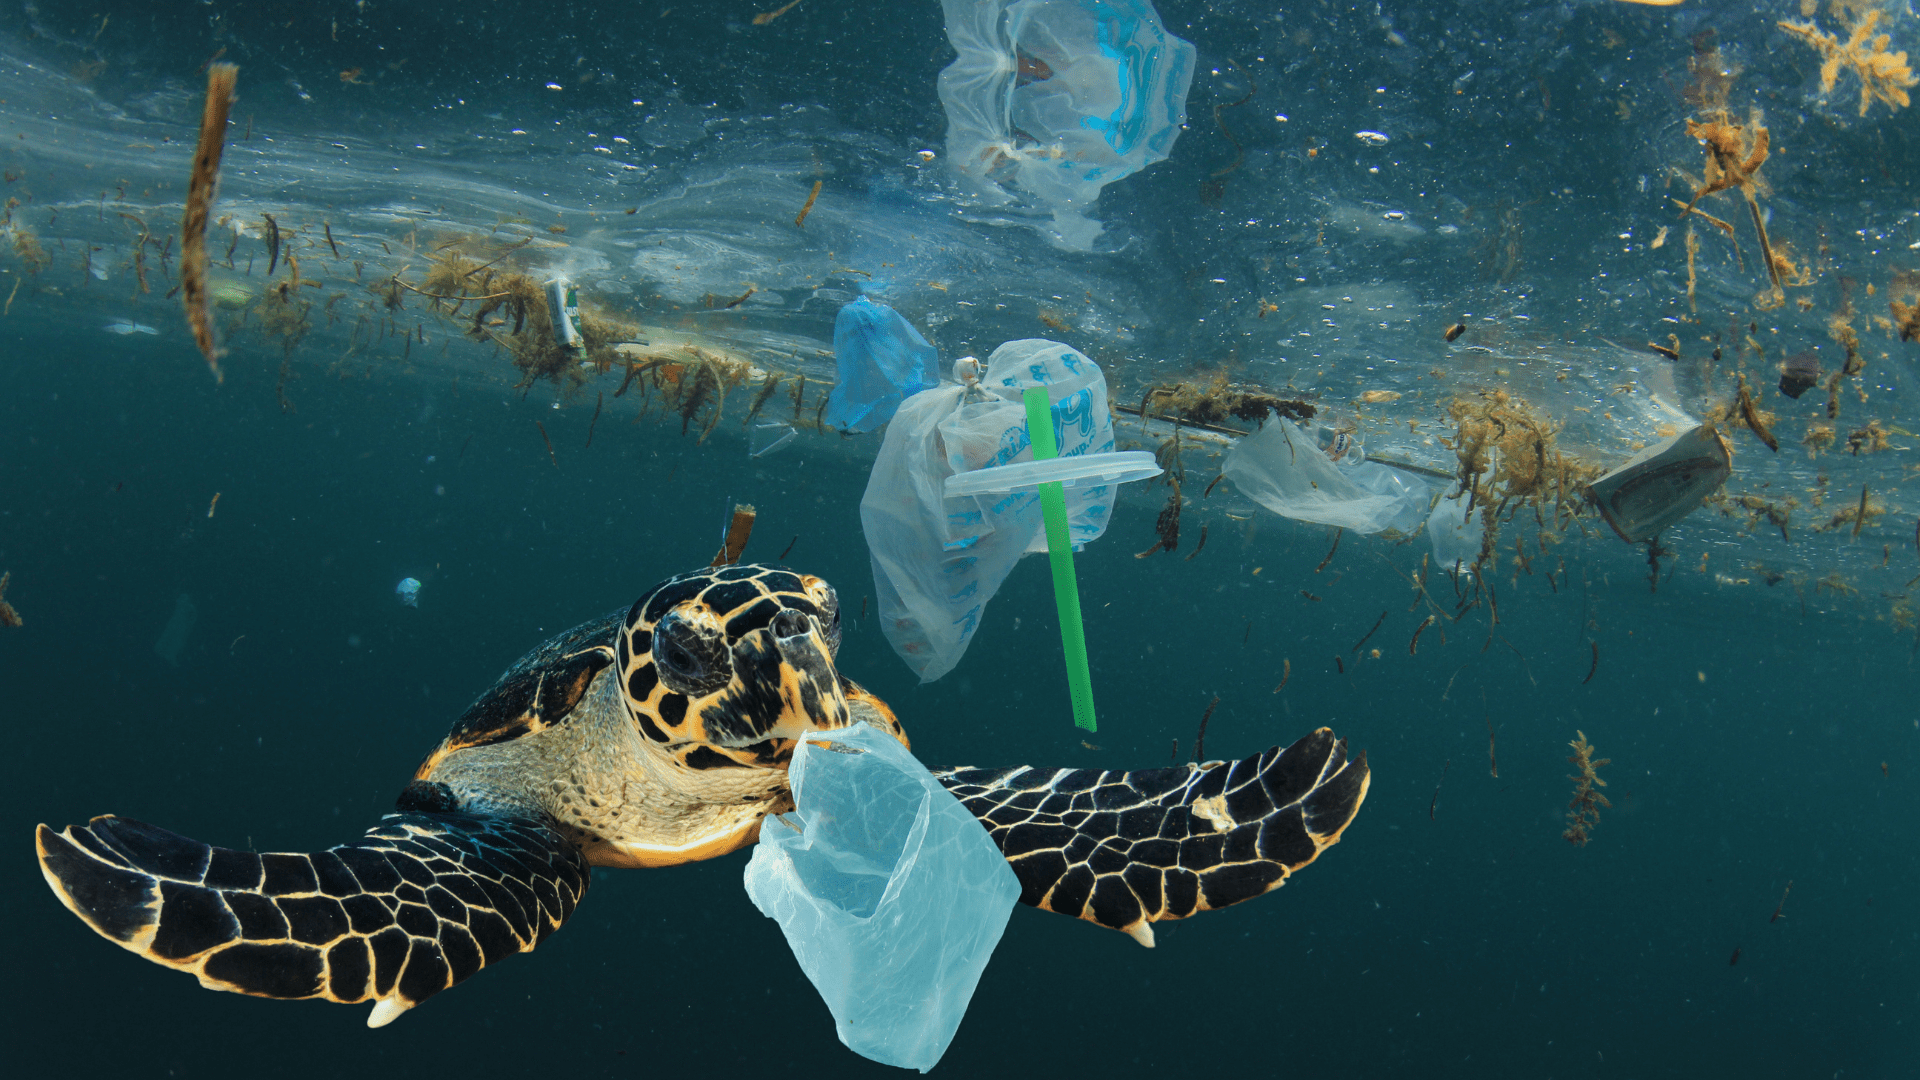 Meeresschildkröte, die durch Plastikmüll schwimmt: Mit der neuen EU-Richtlinie gegen Greenwashing sollen solche Bilder seltener werden